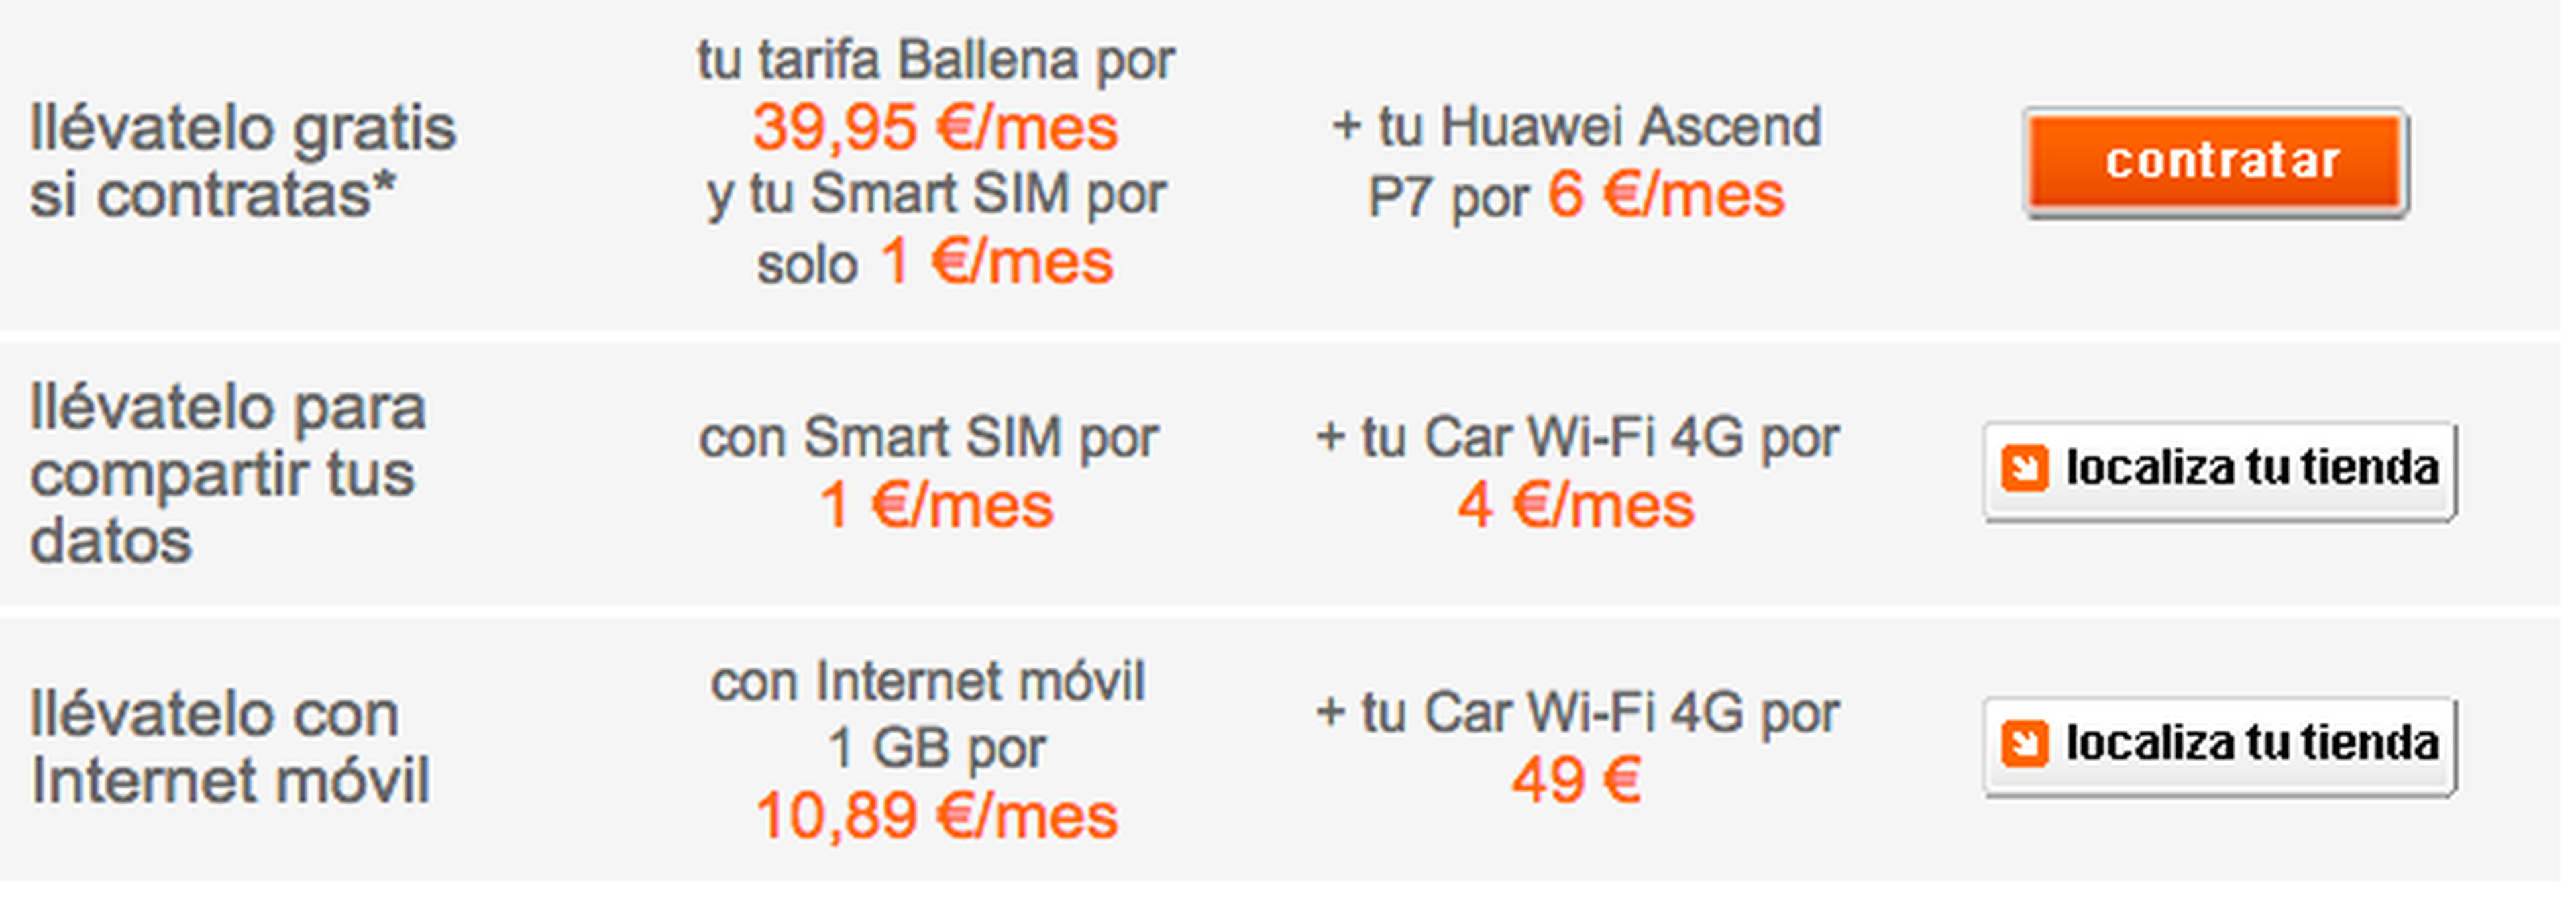 tarifas orange Car Wi-Fi 4G